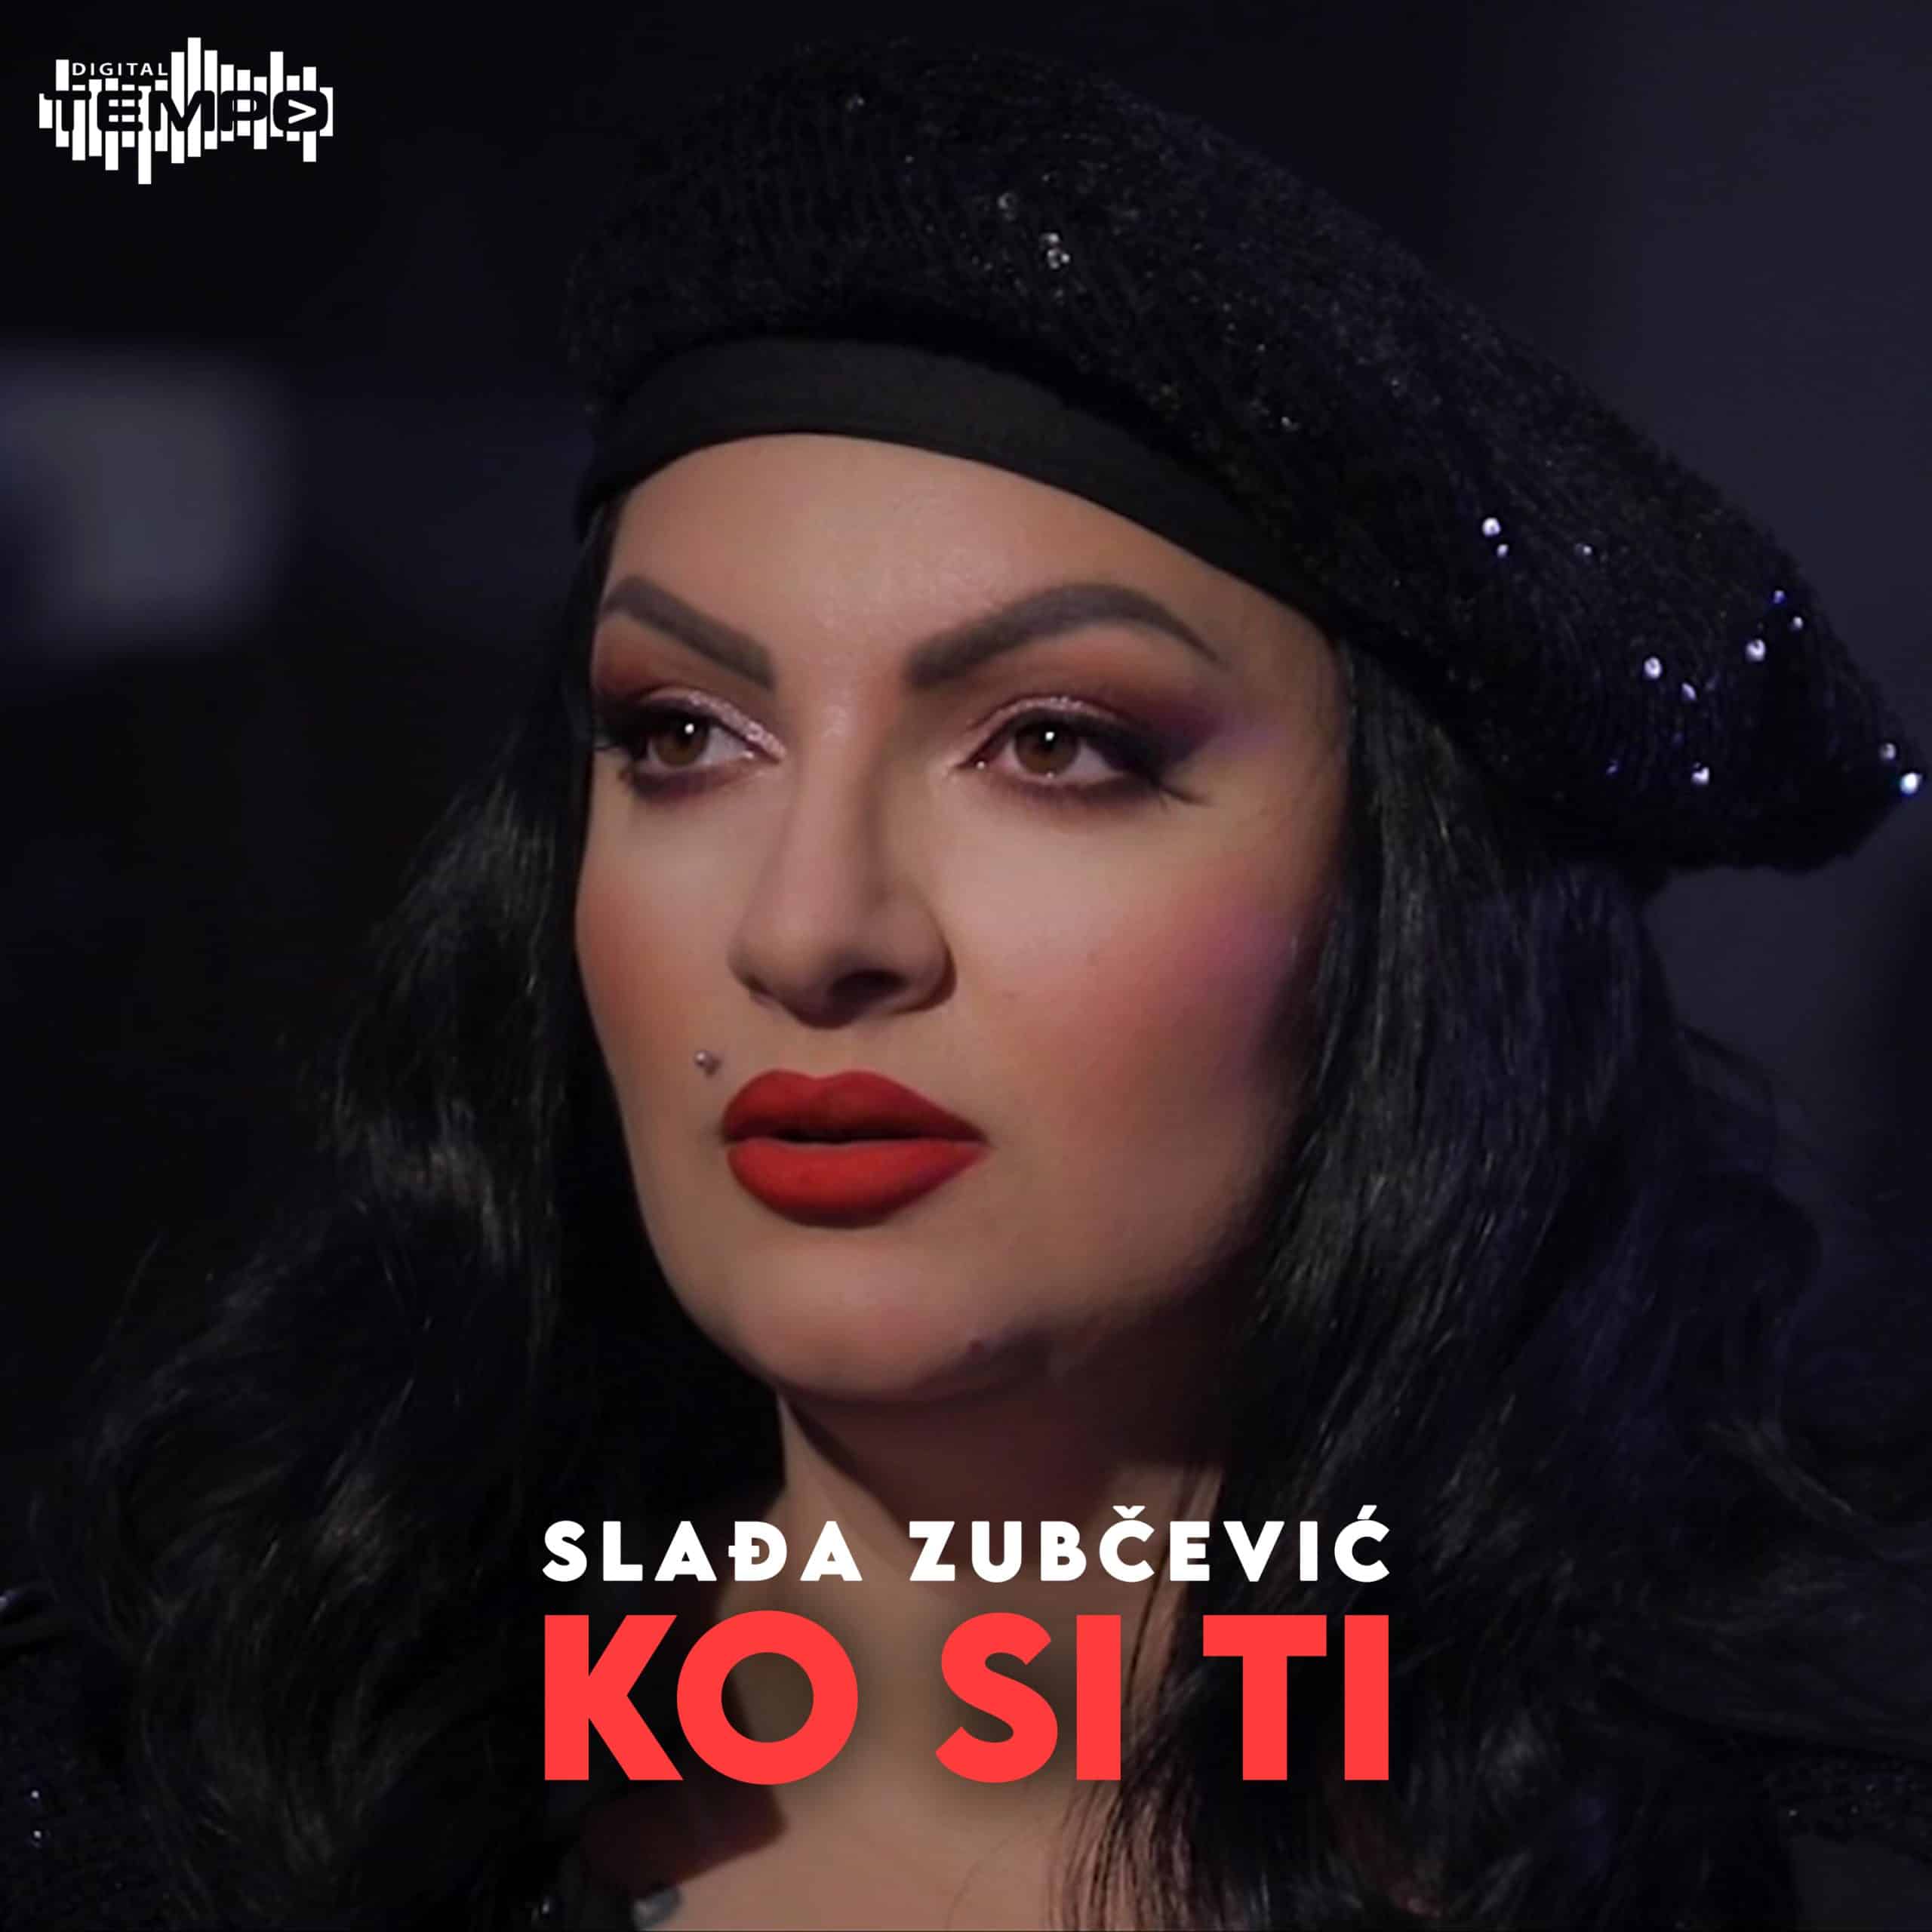 Slađa Zubčević predstavila pjesmu “Ko si ti” (V1DEO)